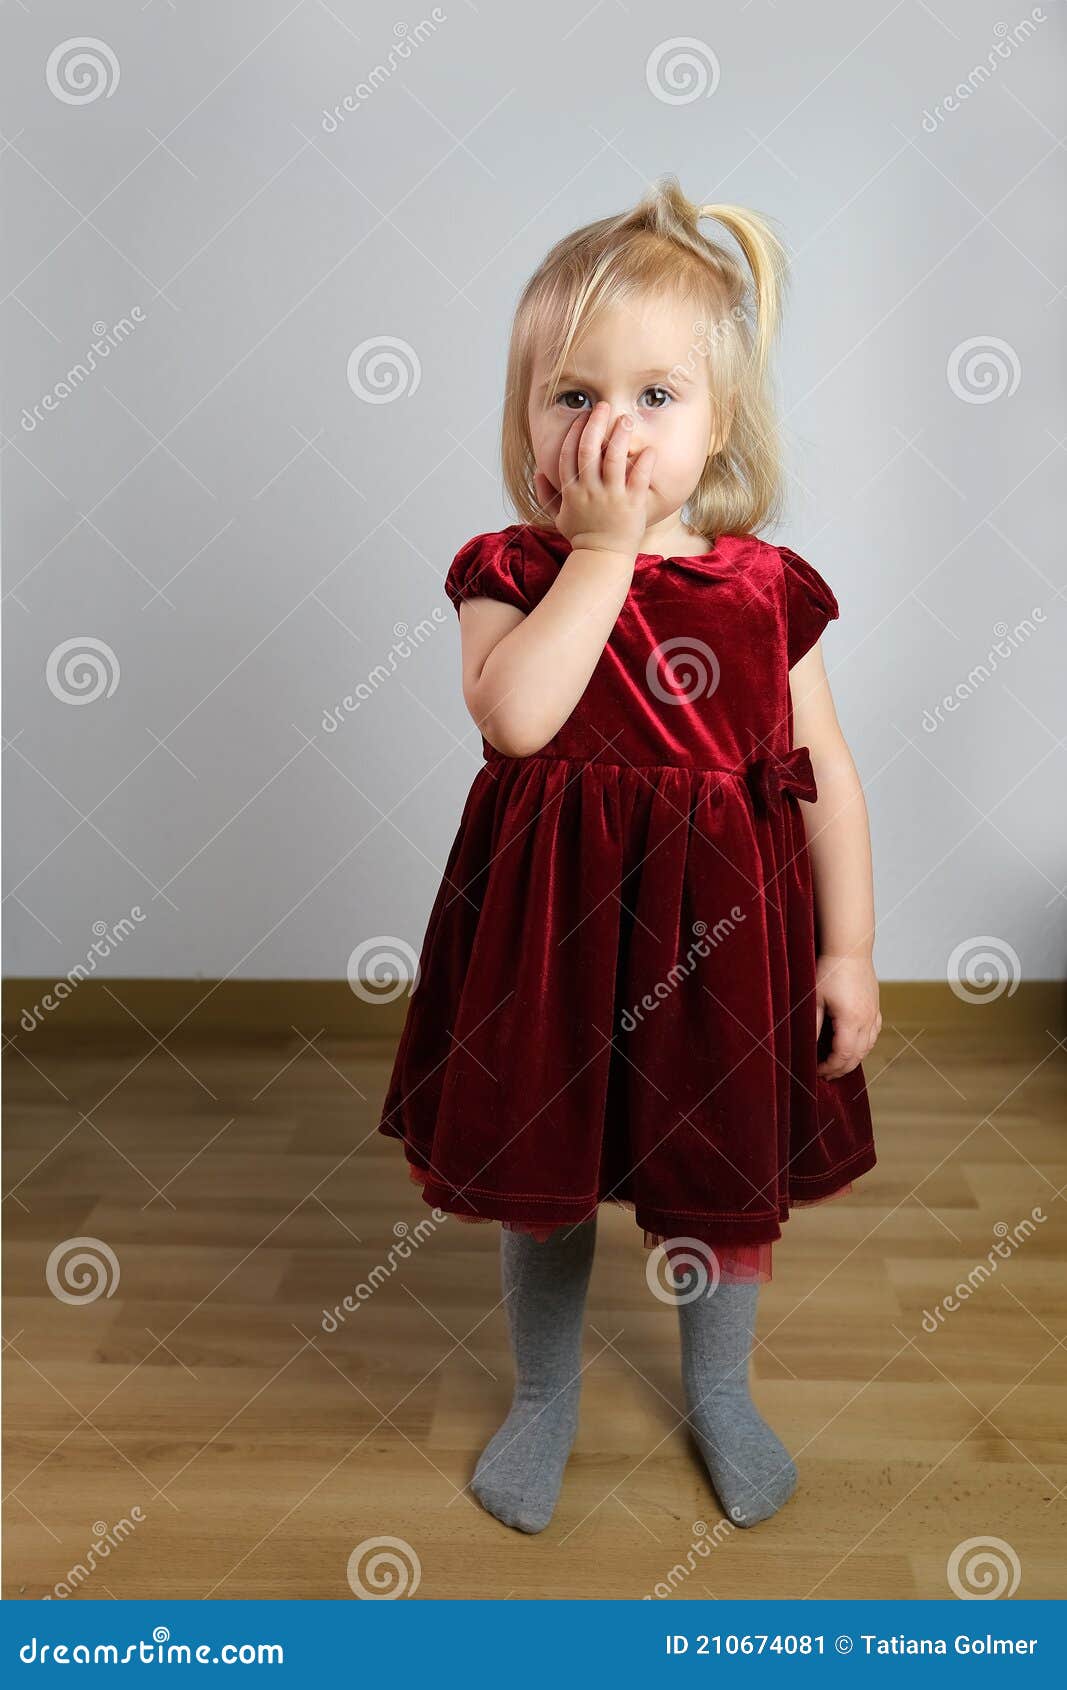 Niña Rubia De 2 Años De Edad En Un Vestido Terciopelo Rojo Se Para En La Habitación Es Tímida Sostiene Sus Manos a Su Cara El C Imagen de archivo -